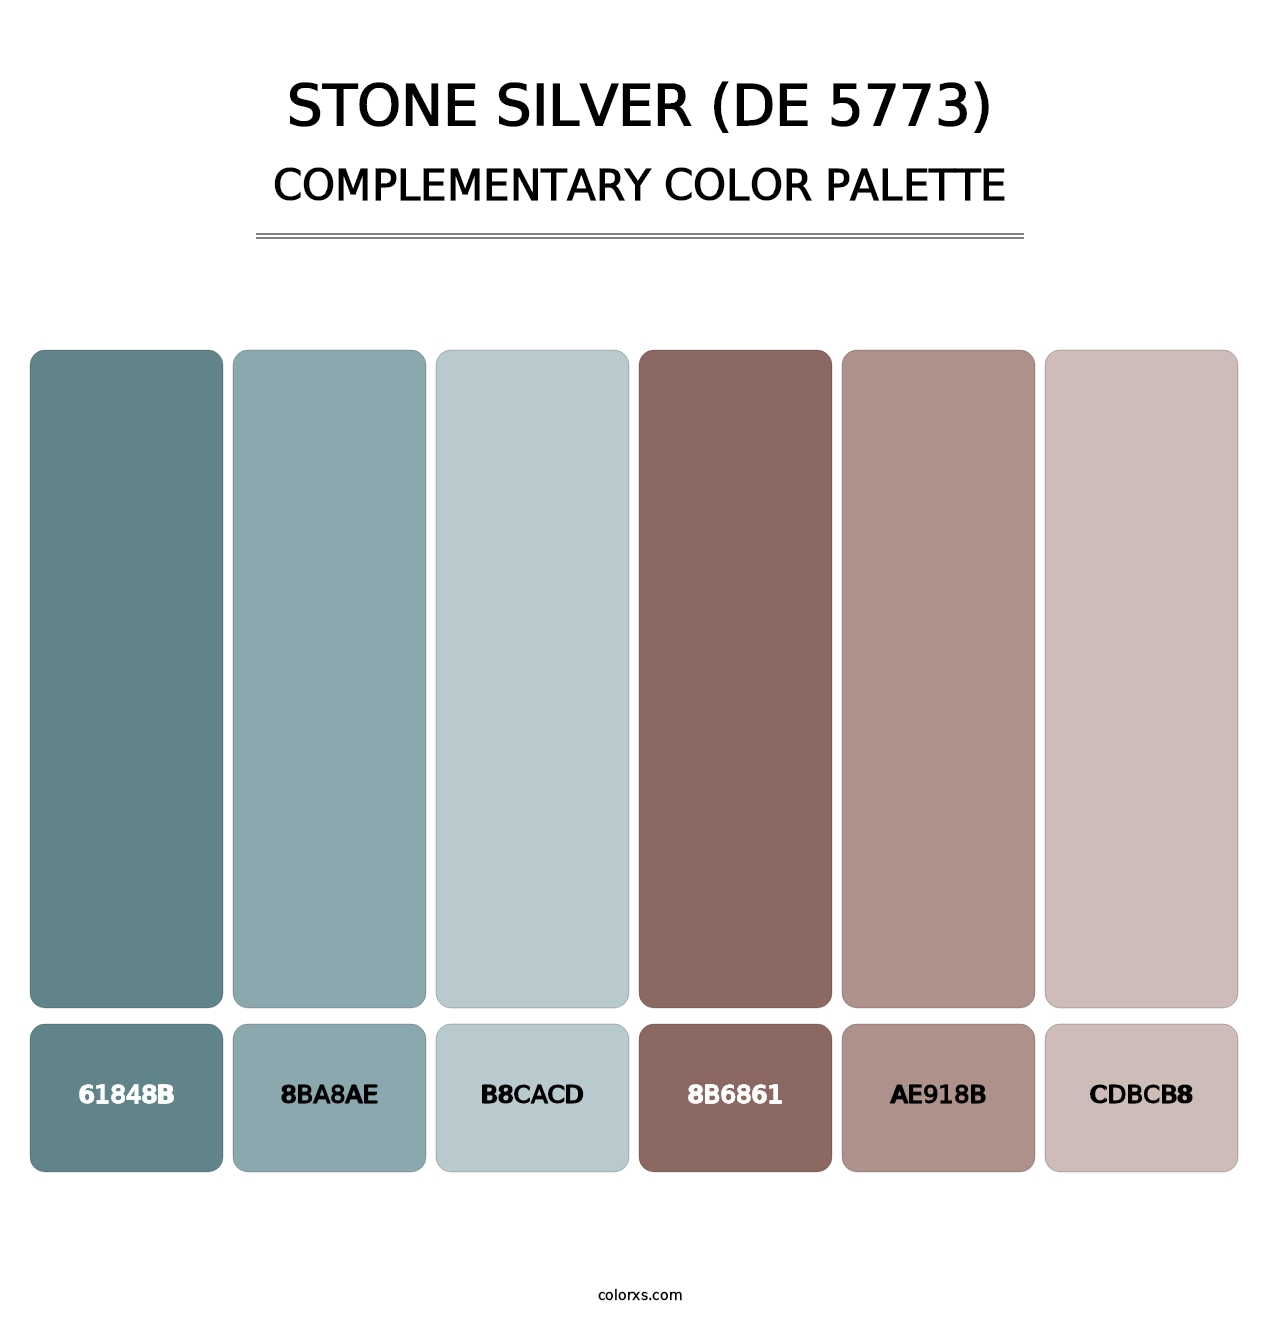 Stone Silver (DE 5773) - Complementary Color Palette